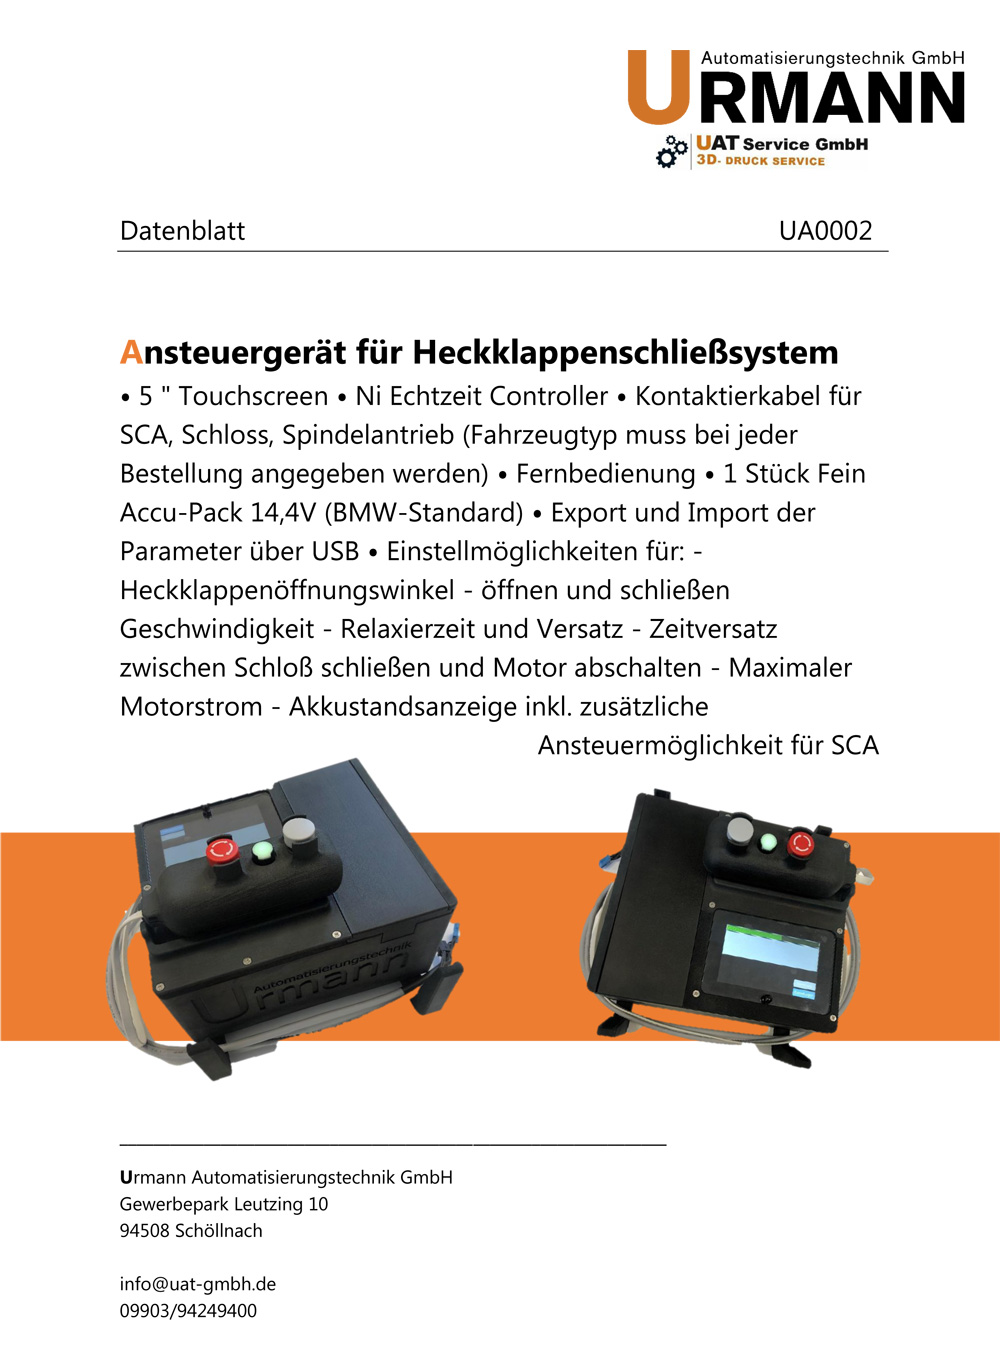 Ansteuergerät für Heckklappenschließsystem Urmann Automatisierungstechnik GmbH